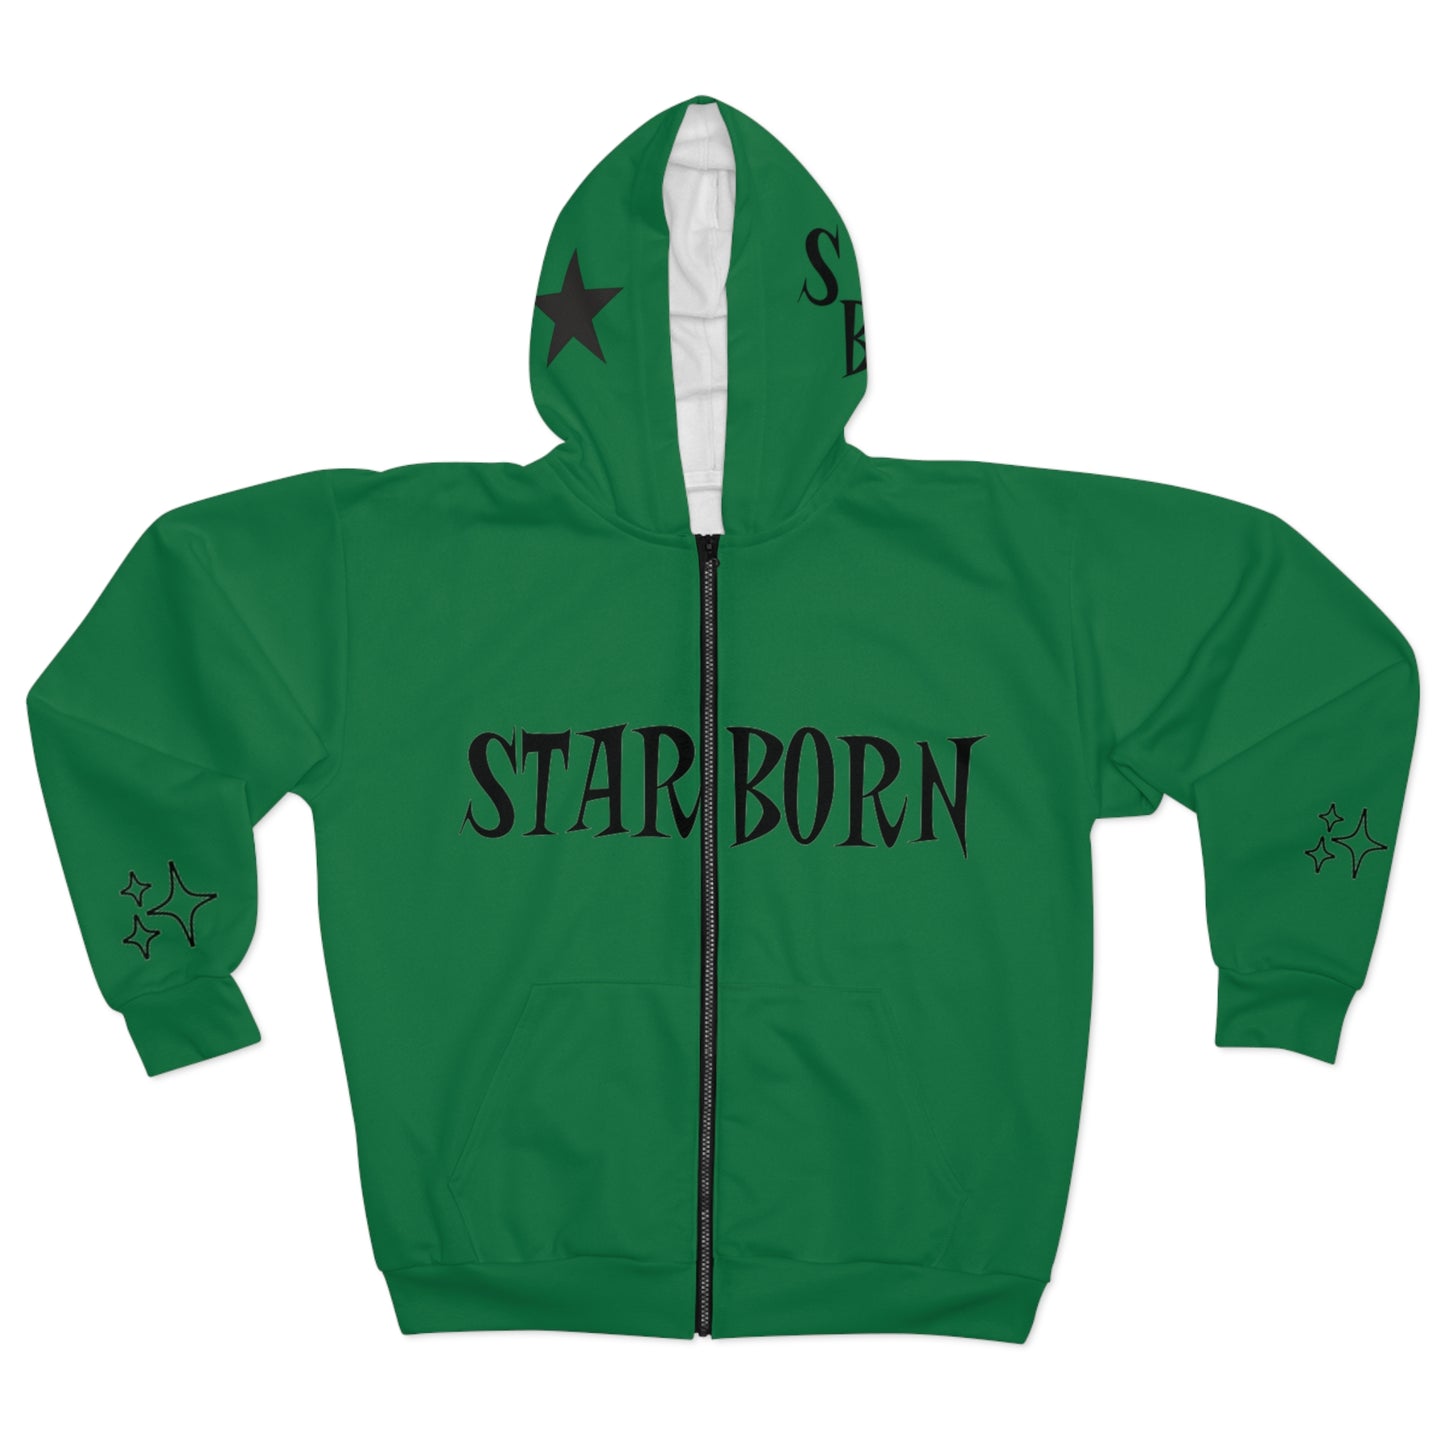 Starborn Green zip up